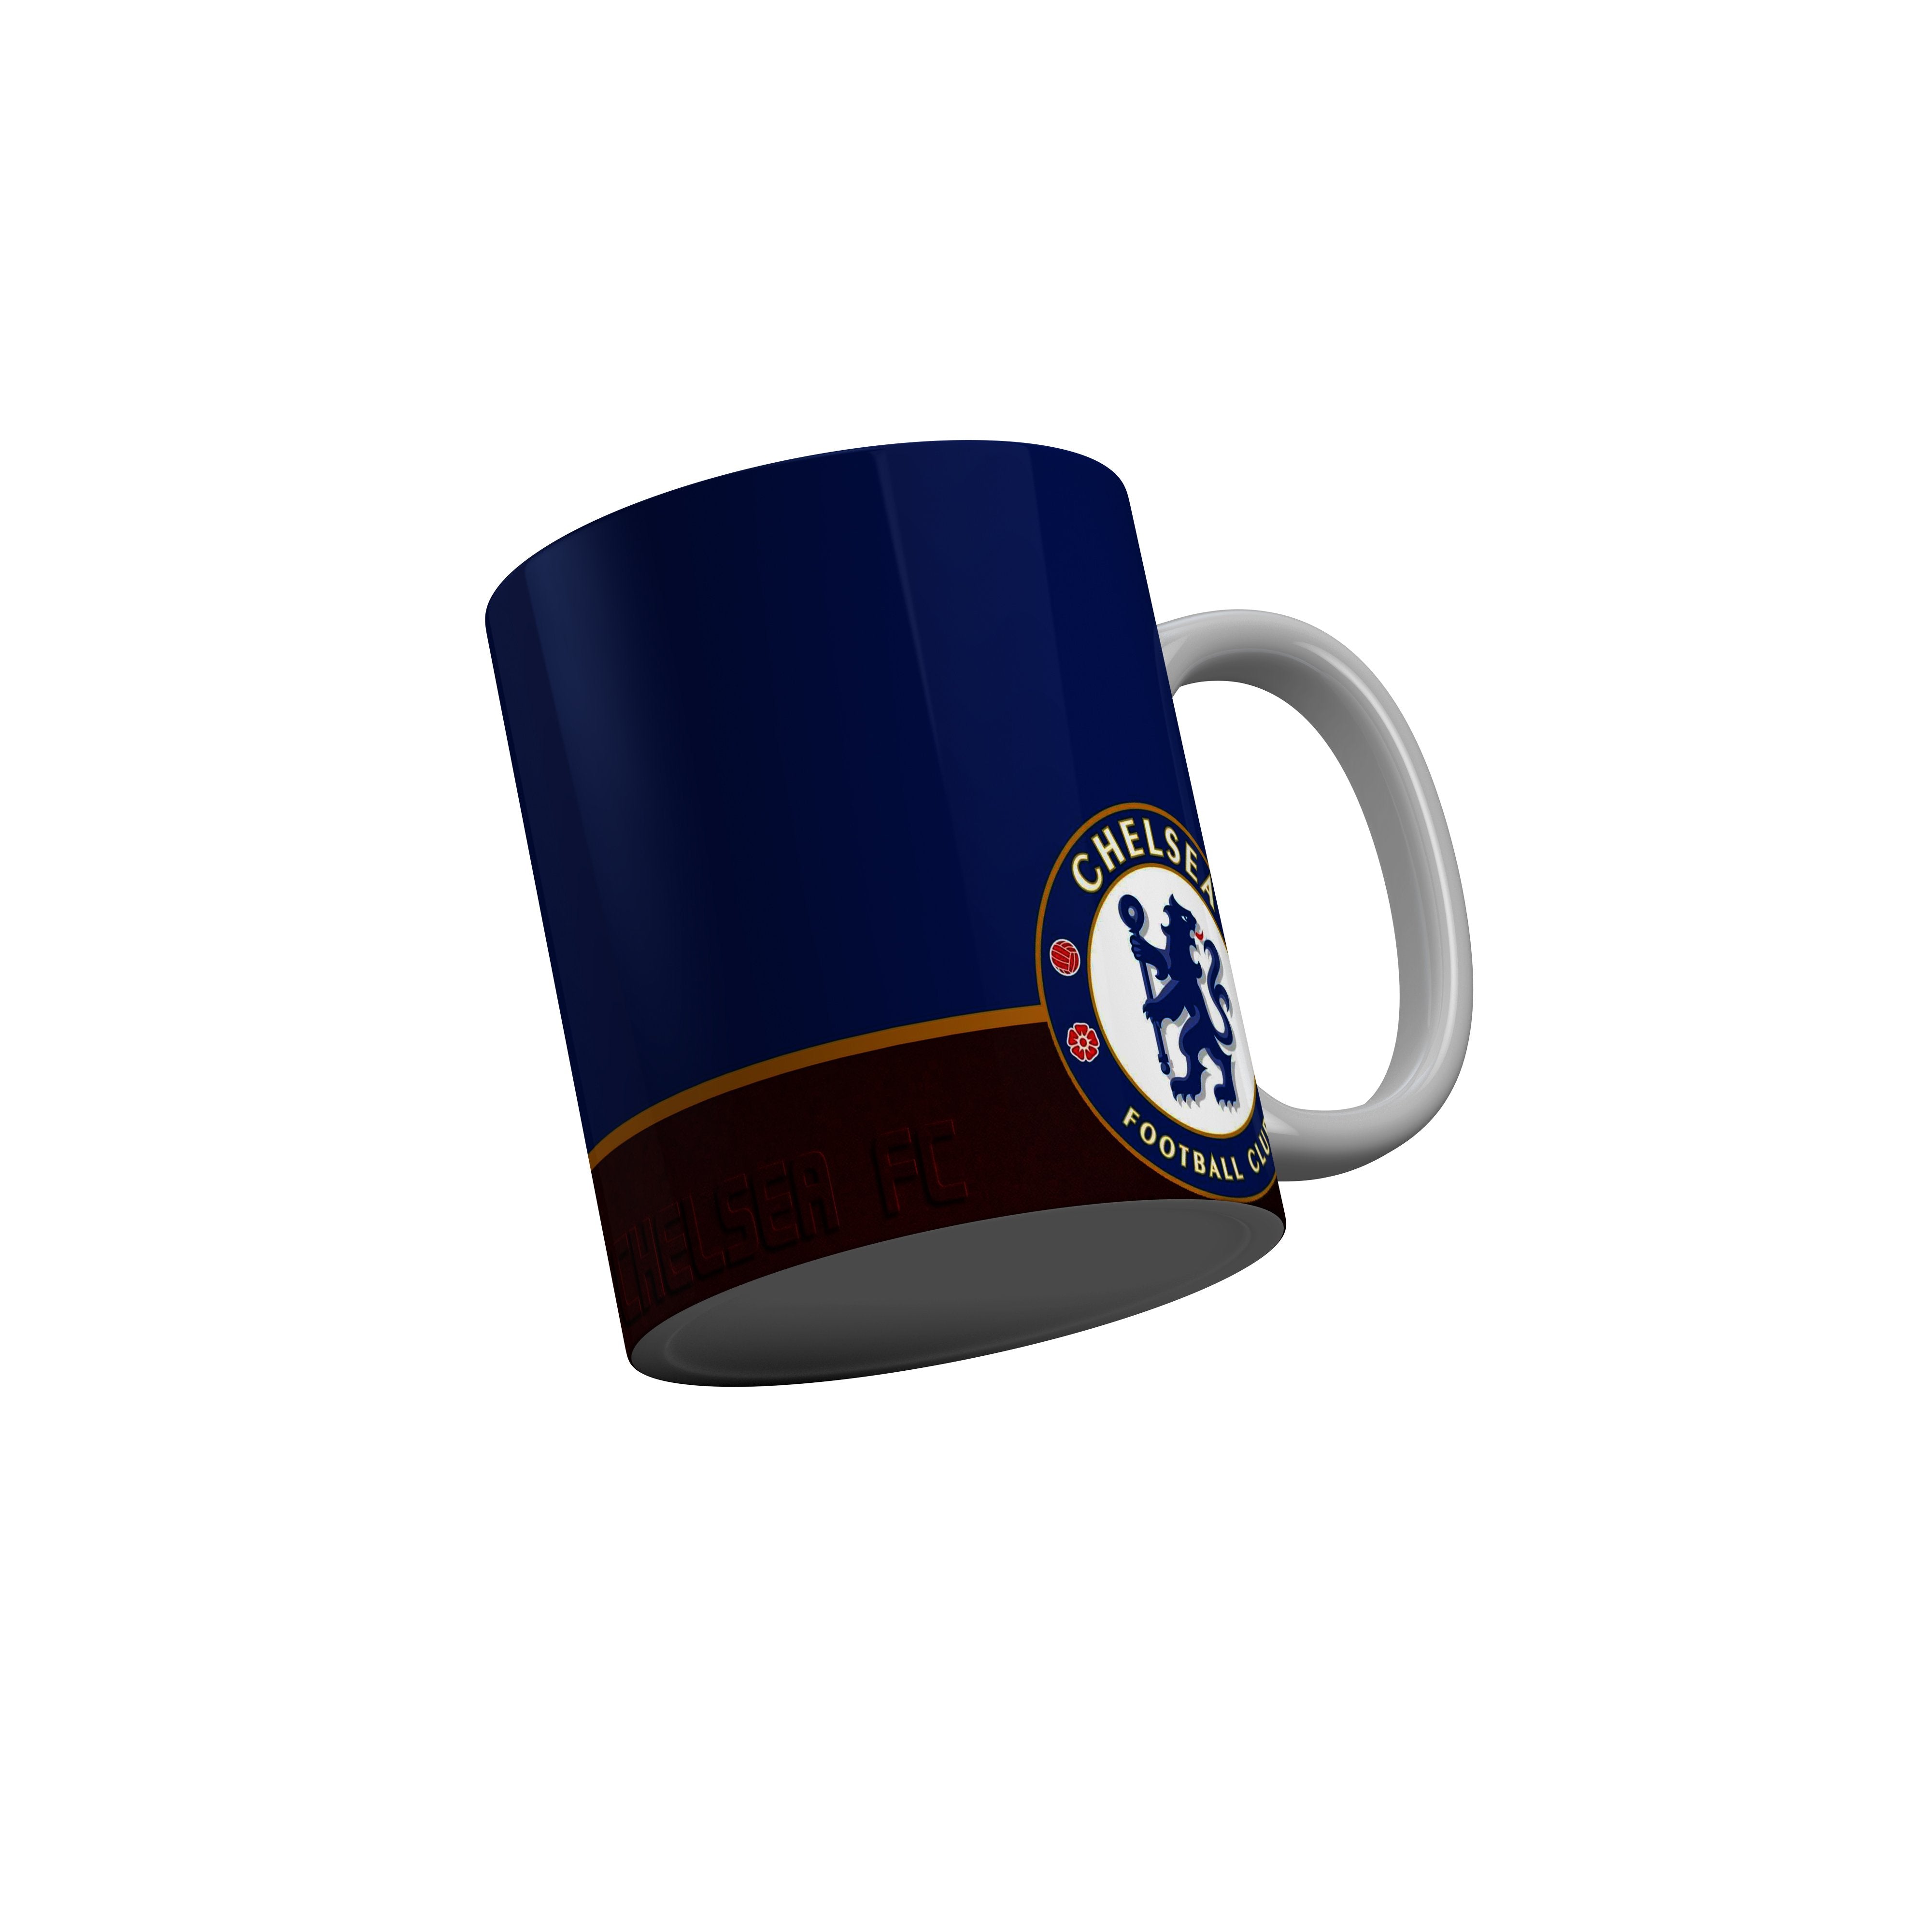 FashionRazor Chelsea Football Club Blue Red Ceramic Coffee Mug